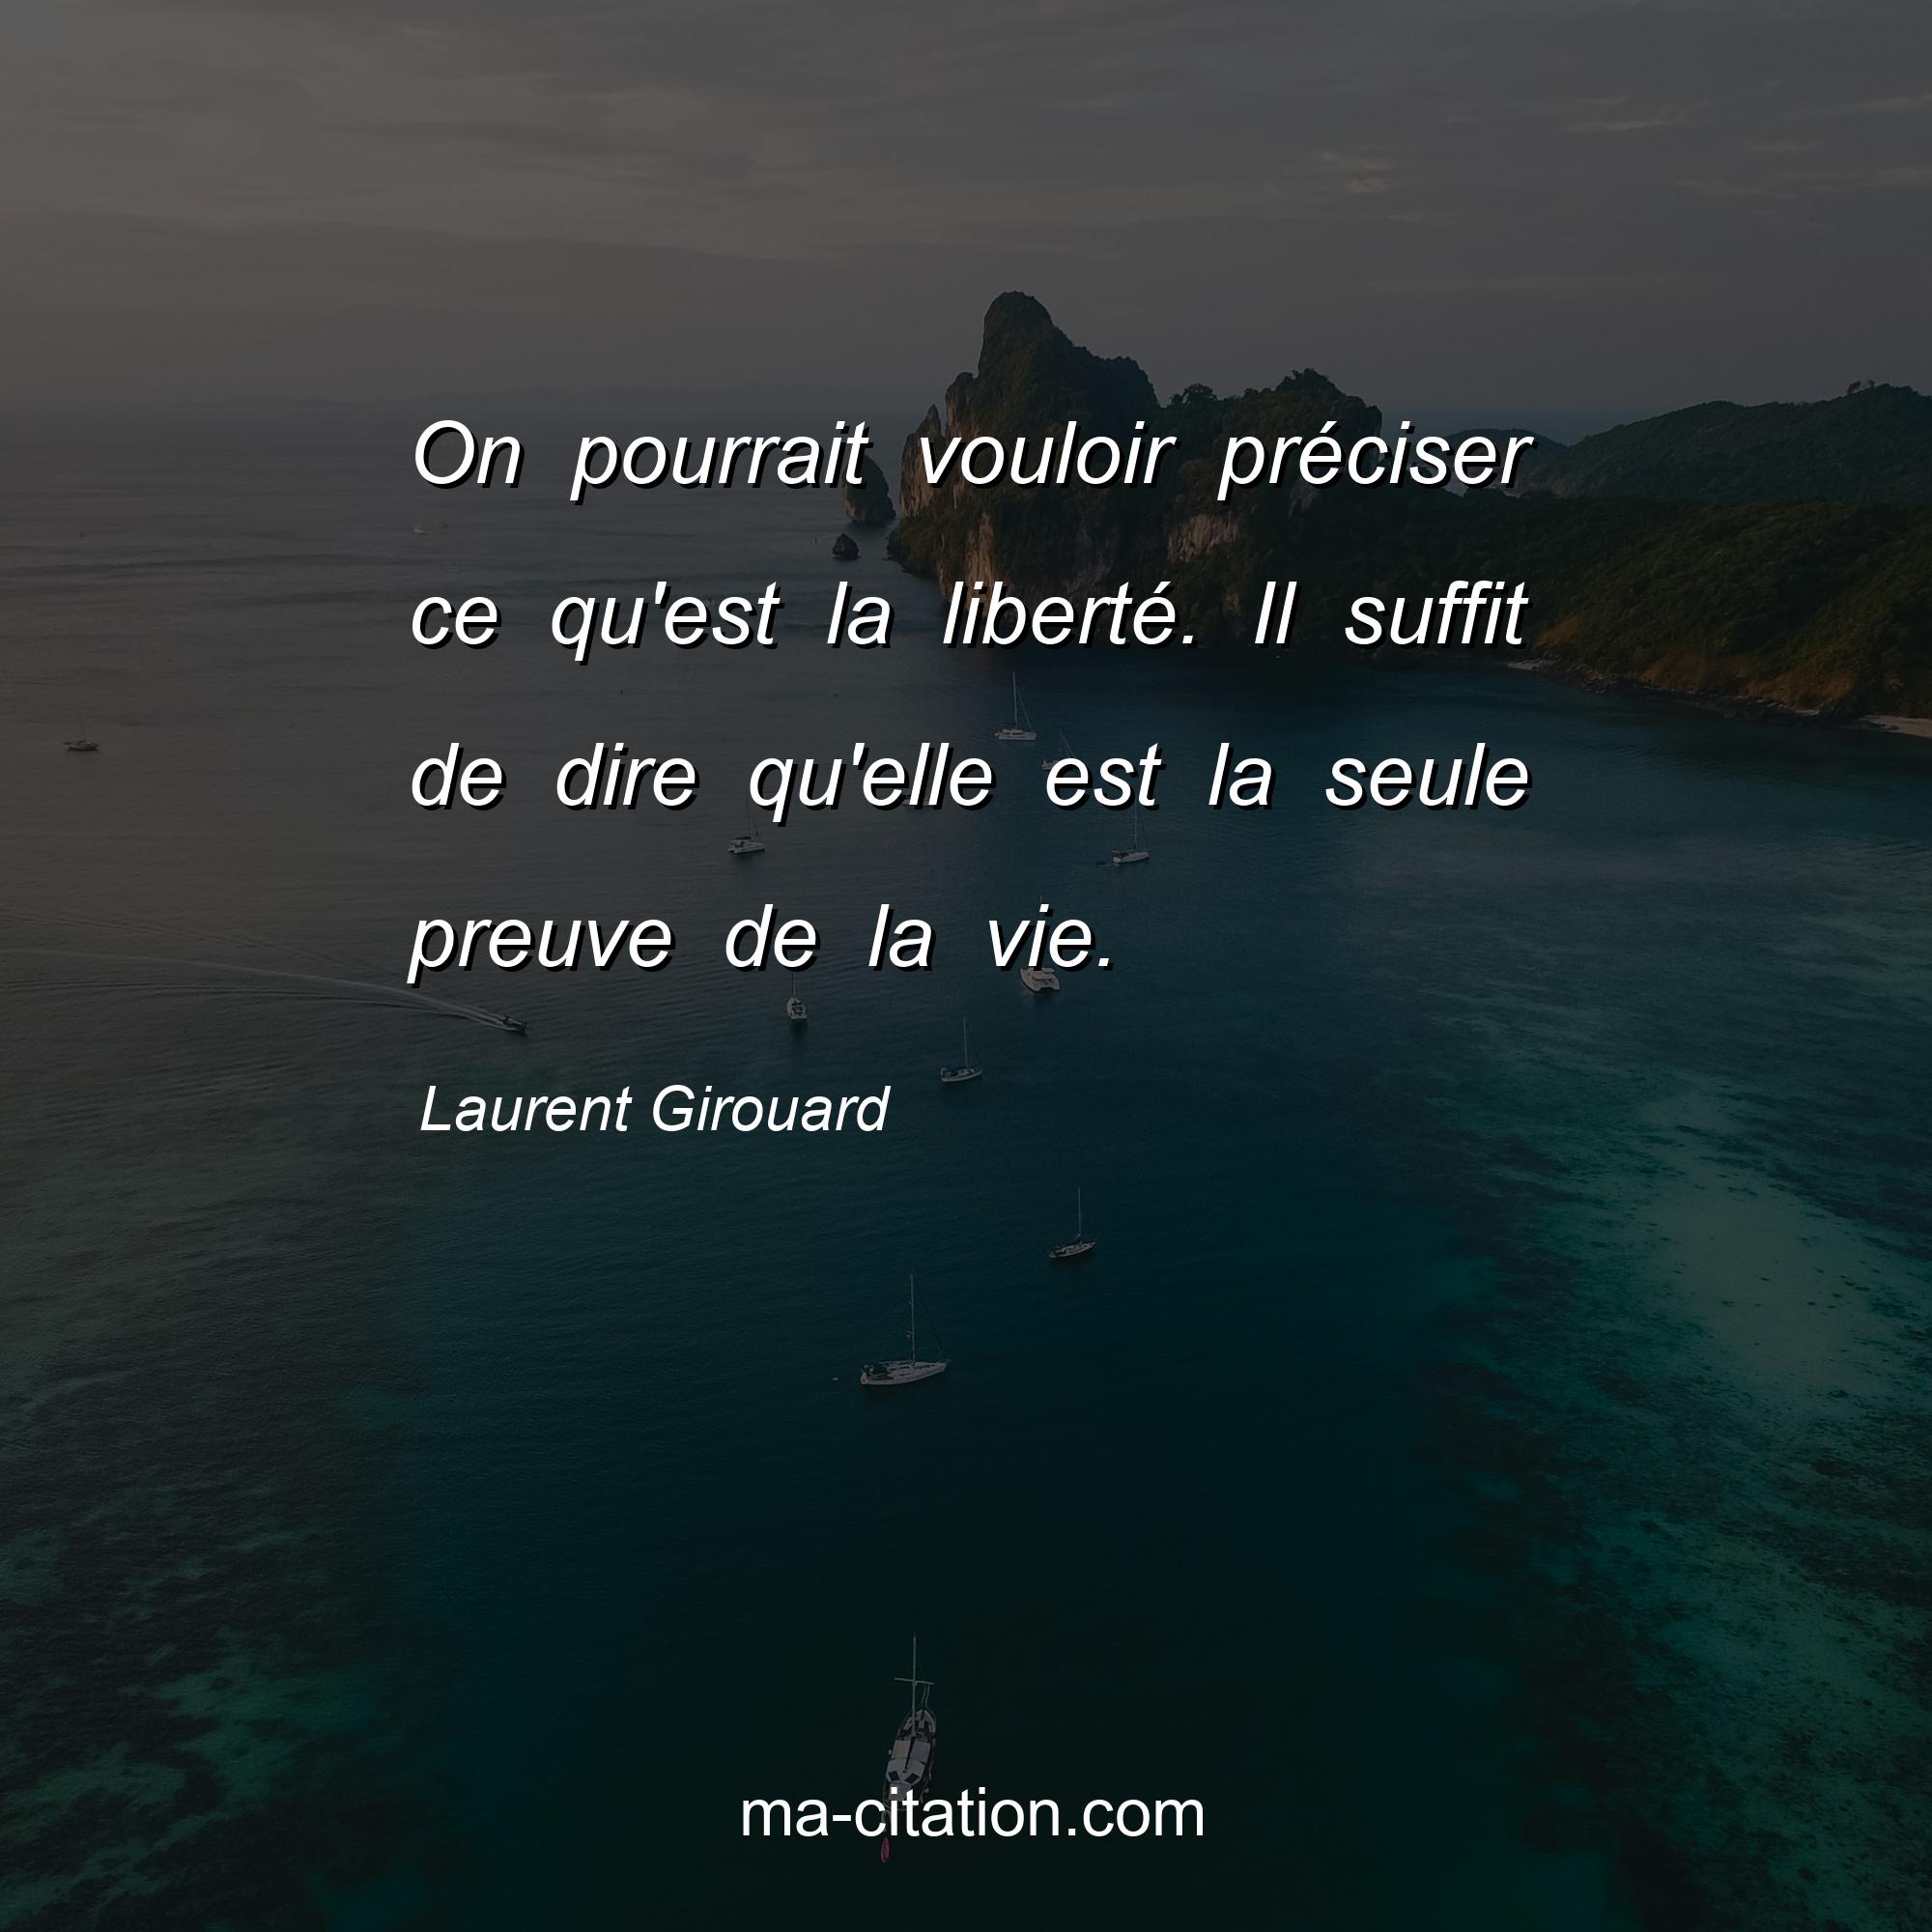 Laurent Girouard : On pourrait vouloir préciser ce qu'est la liberté. Il suffit de dire qu'elle est la seule preuve de la vie.